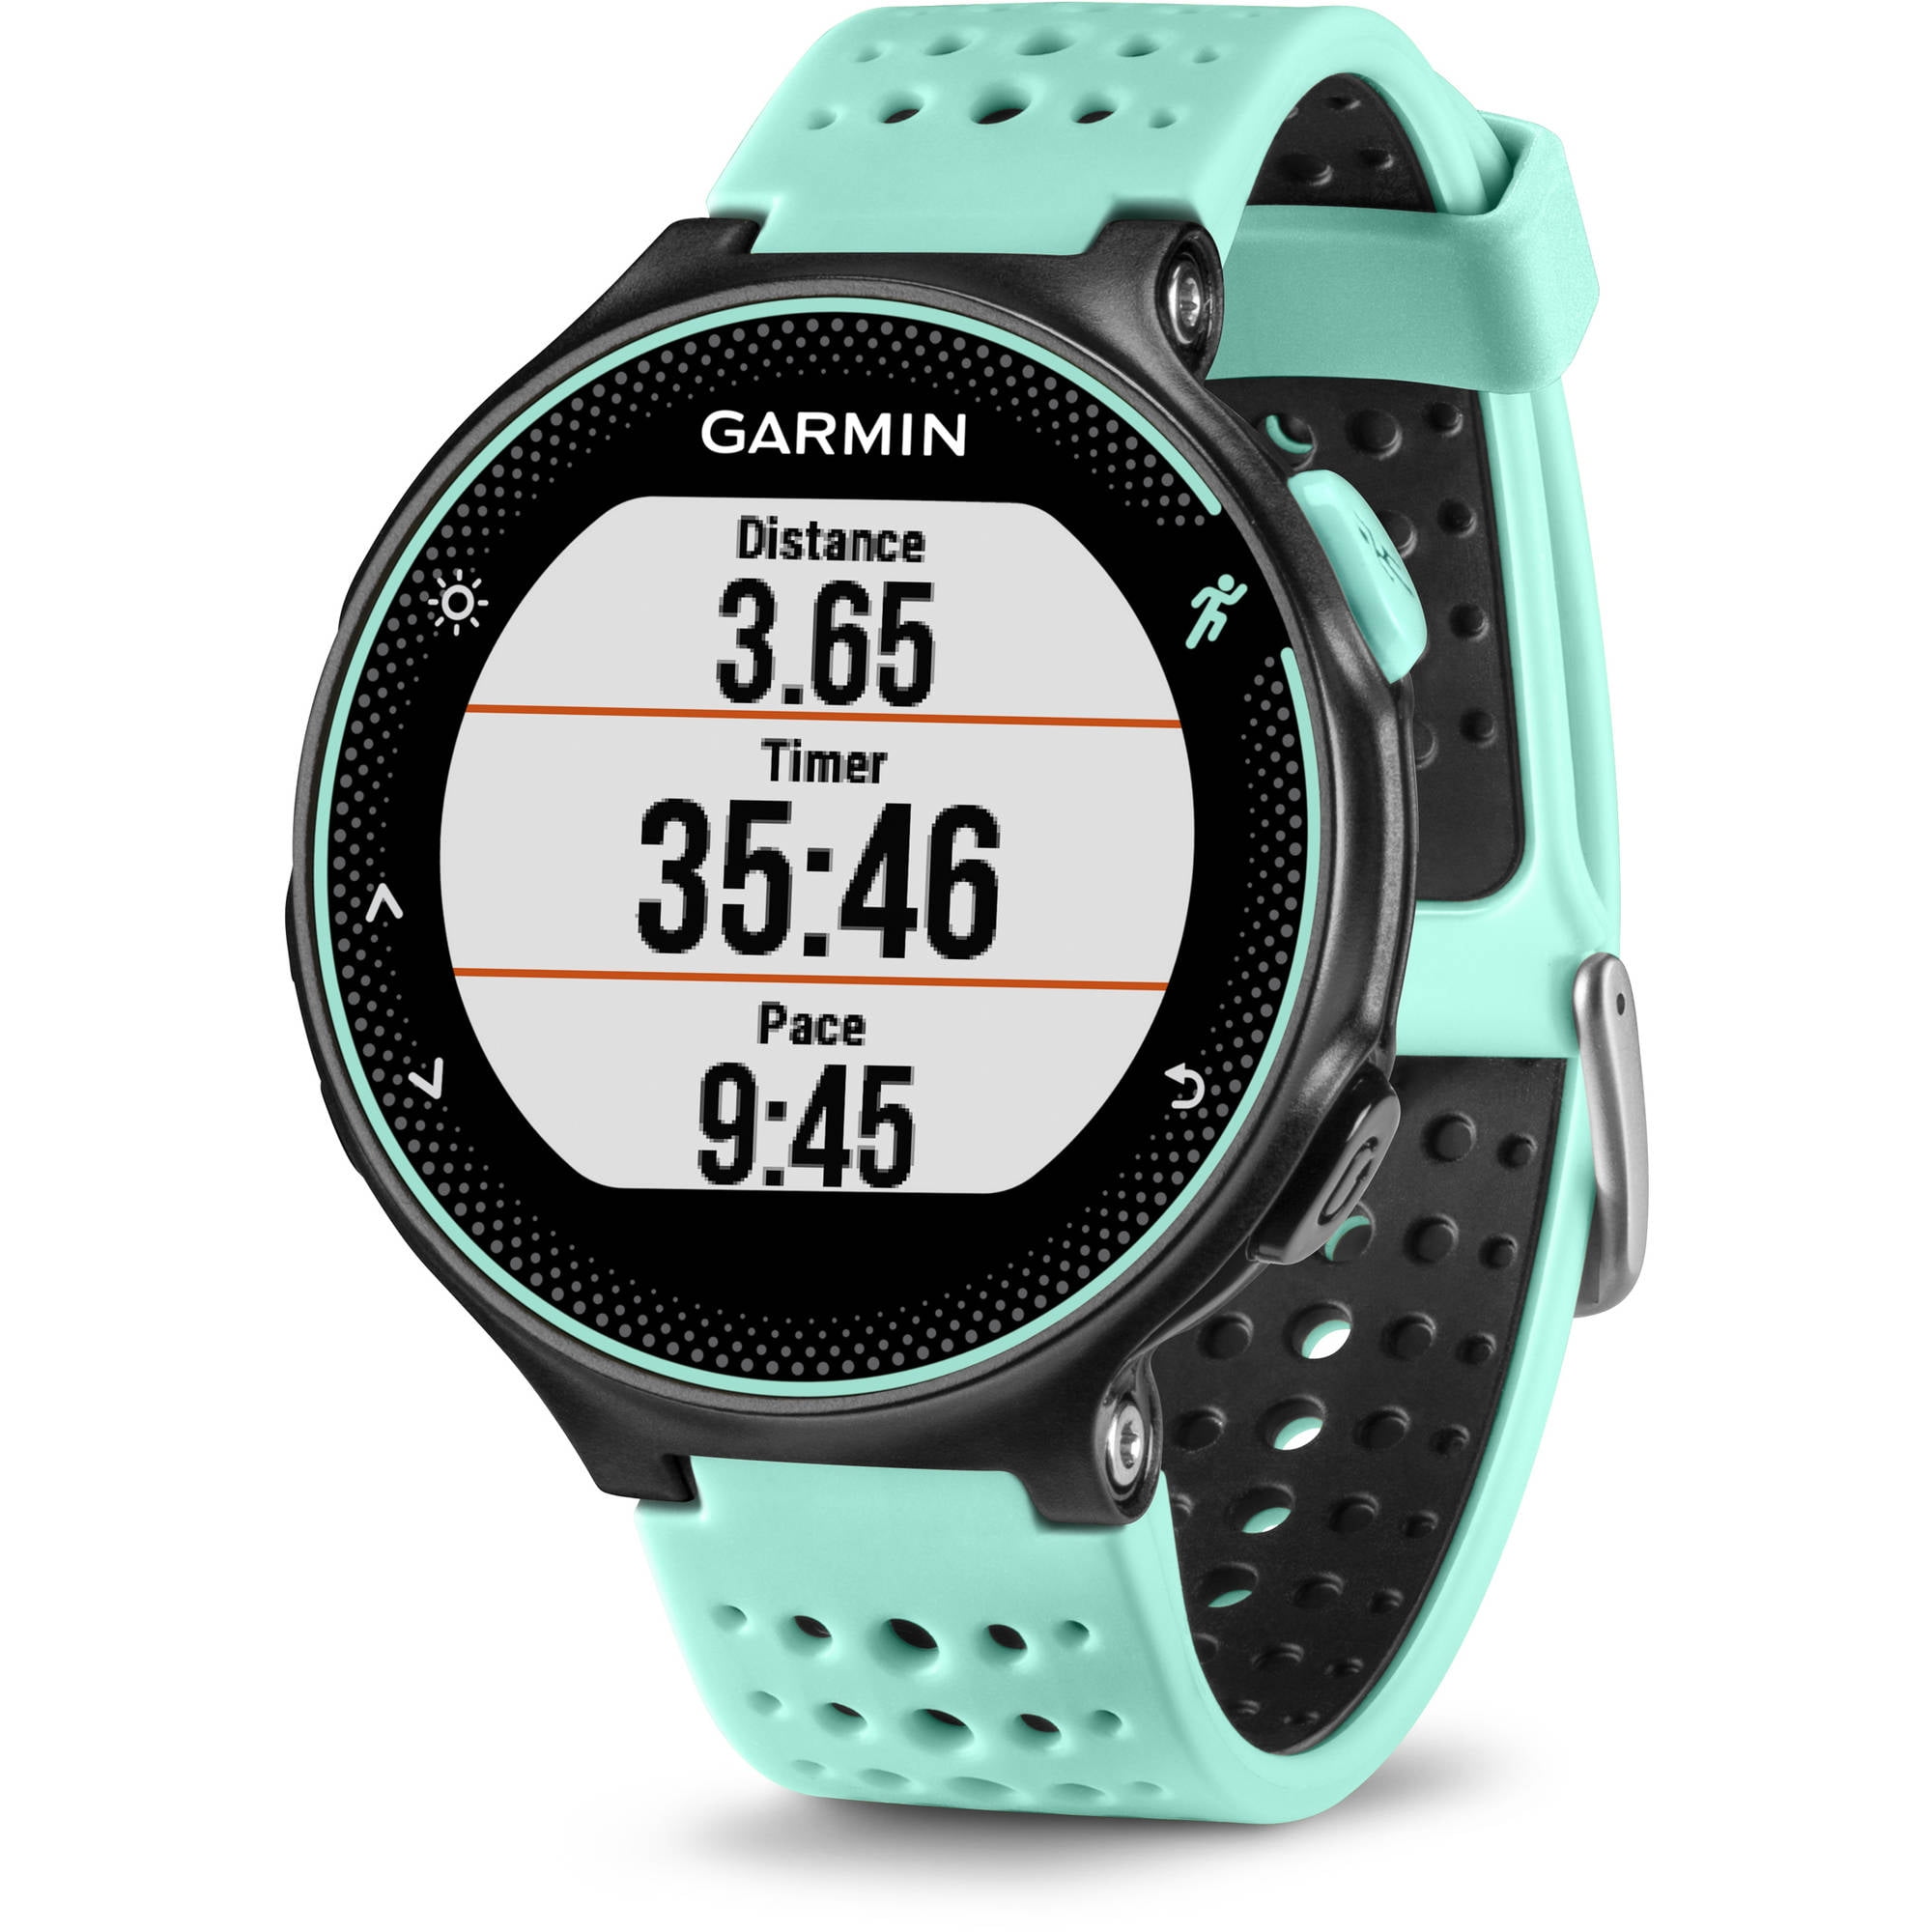 Garmin Forerunner 235 - Sport watch with strap - silicone - gray